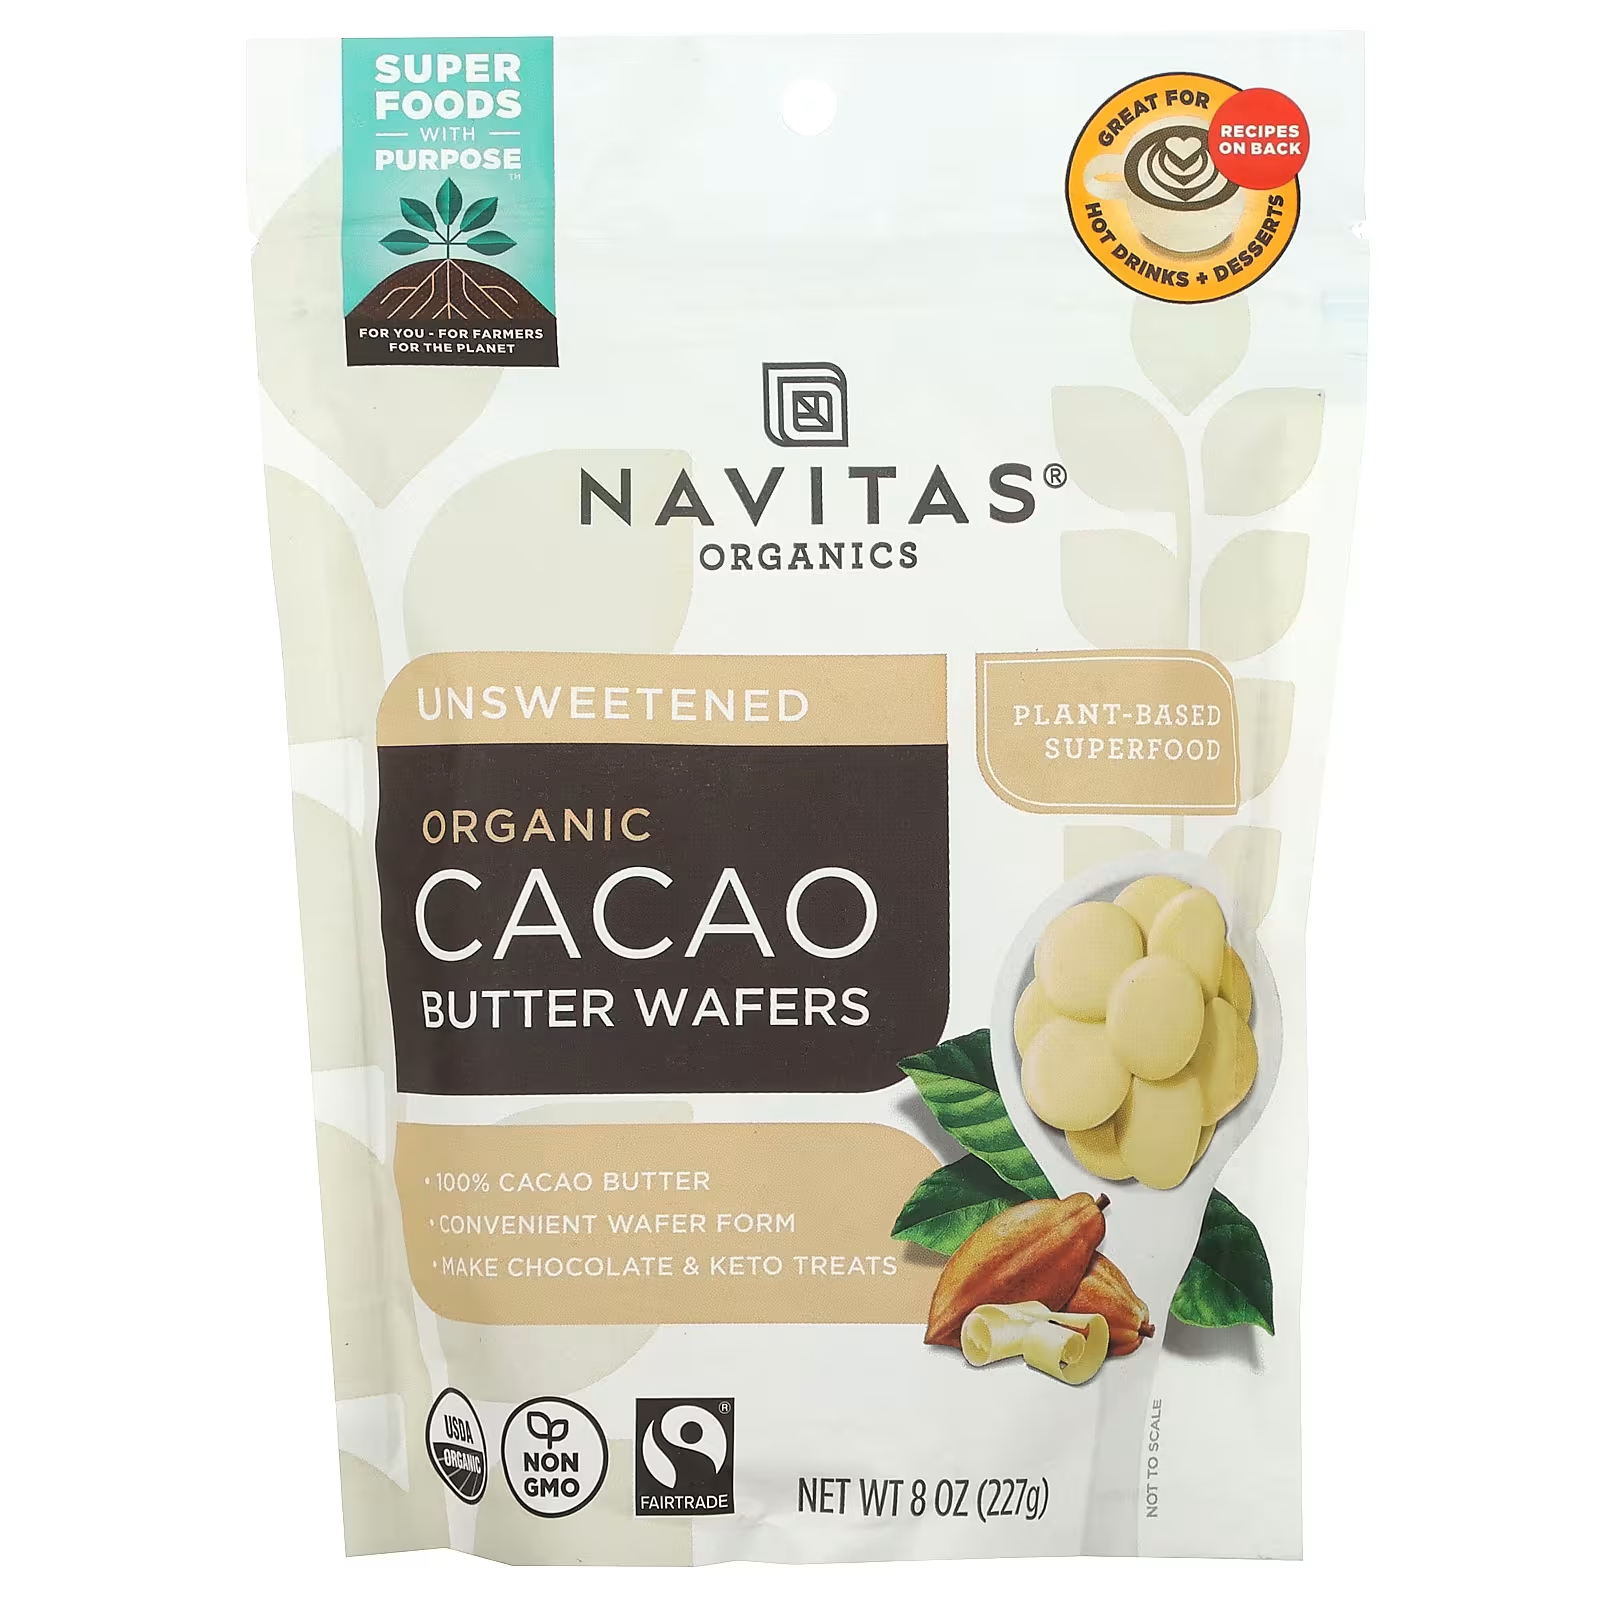 Navitas Organics Органические вафли с маслом какао, несладкие, 8 унций (227 г) navitas organics органические ягоды шелковицы 227 г 8 унций